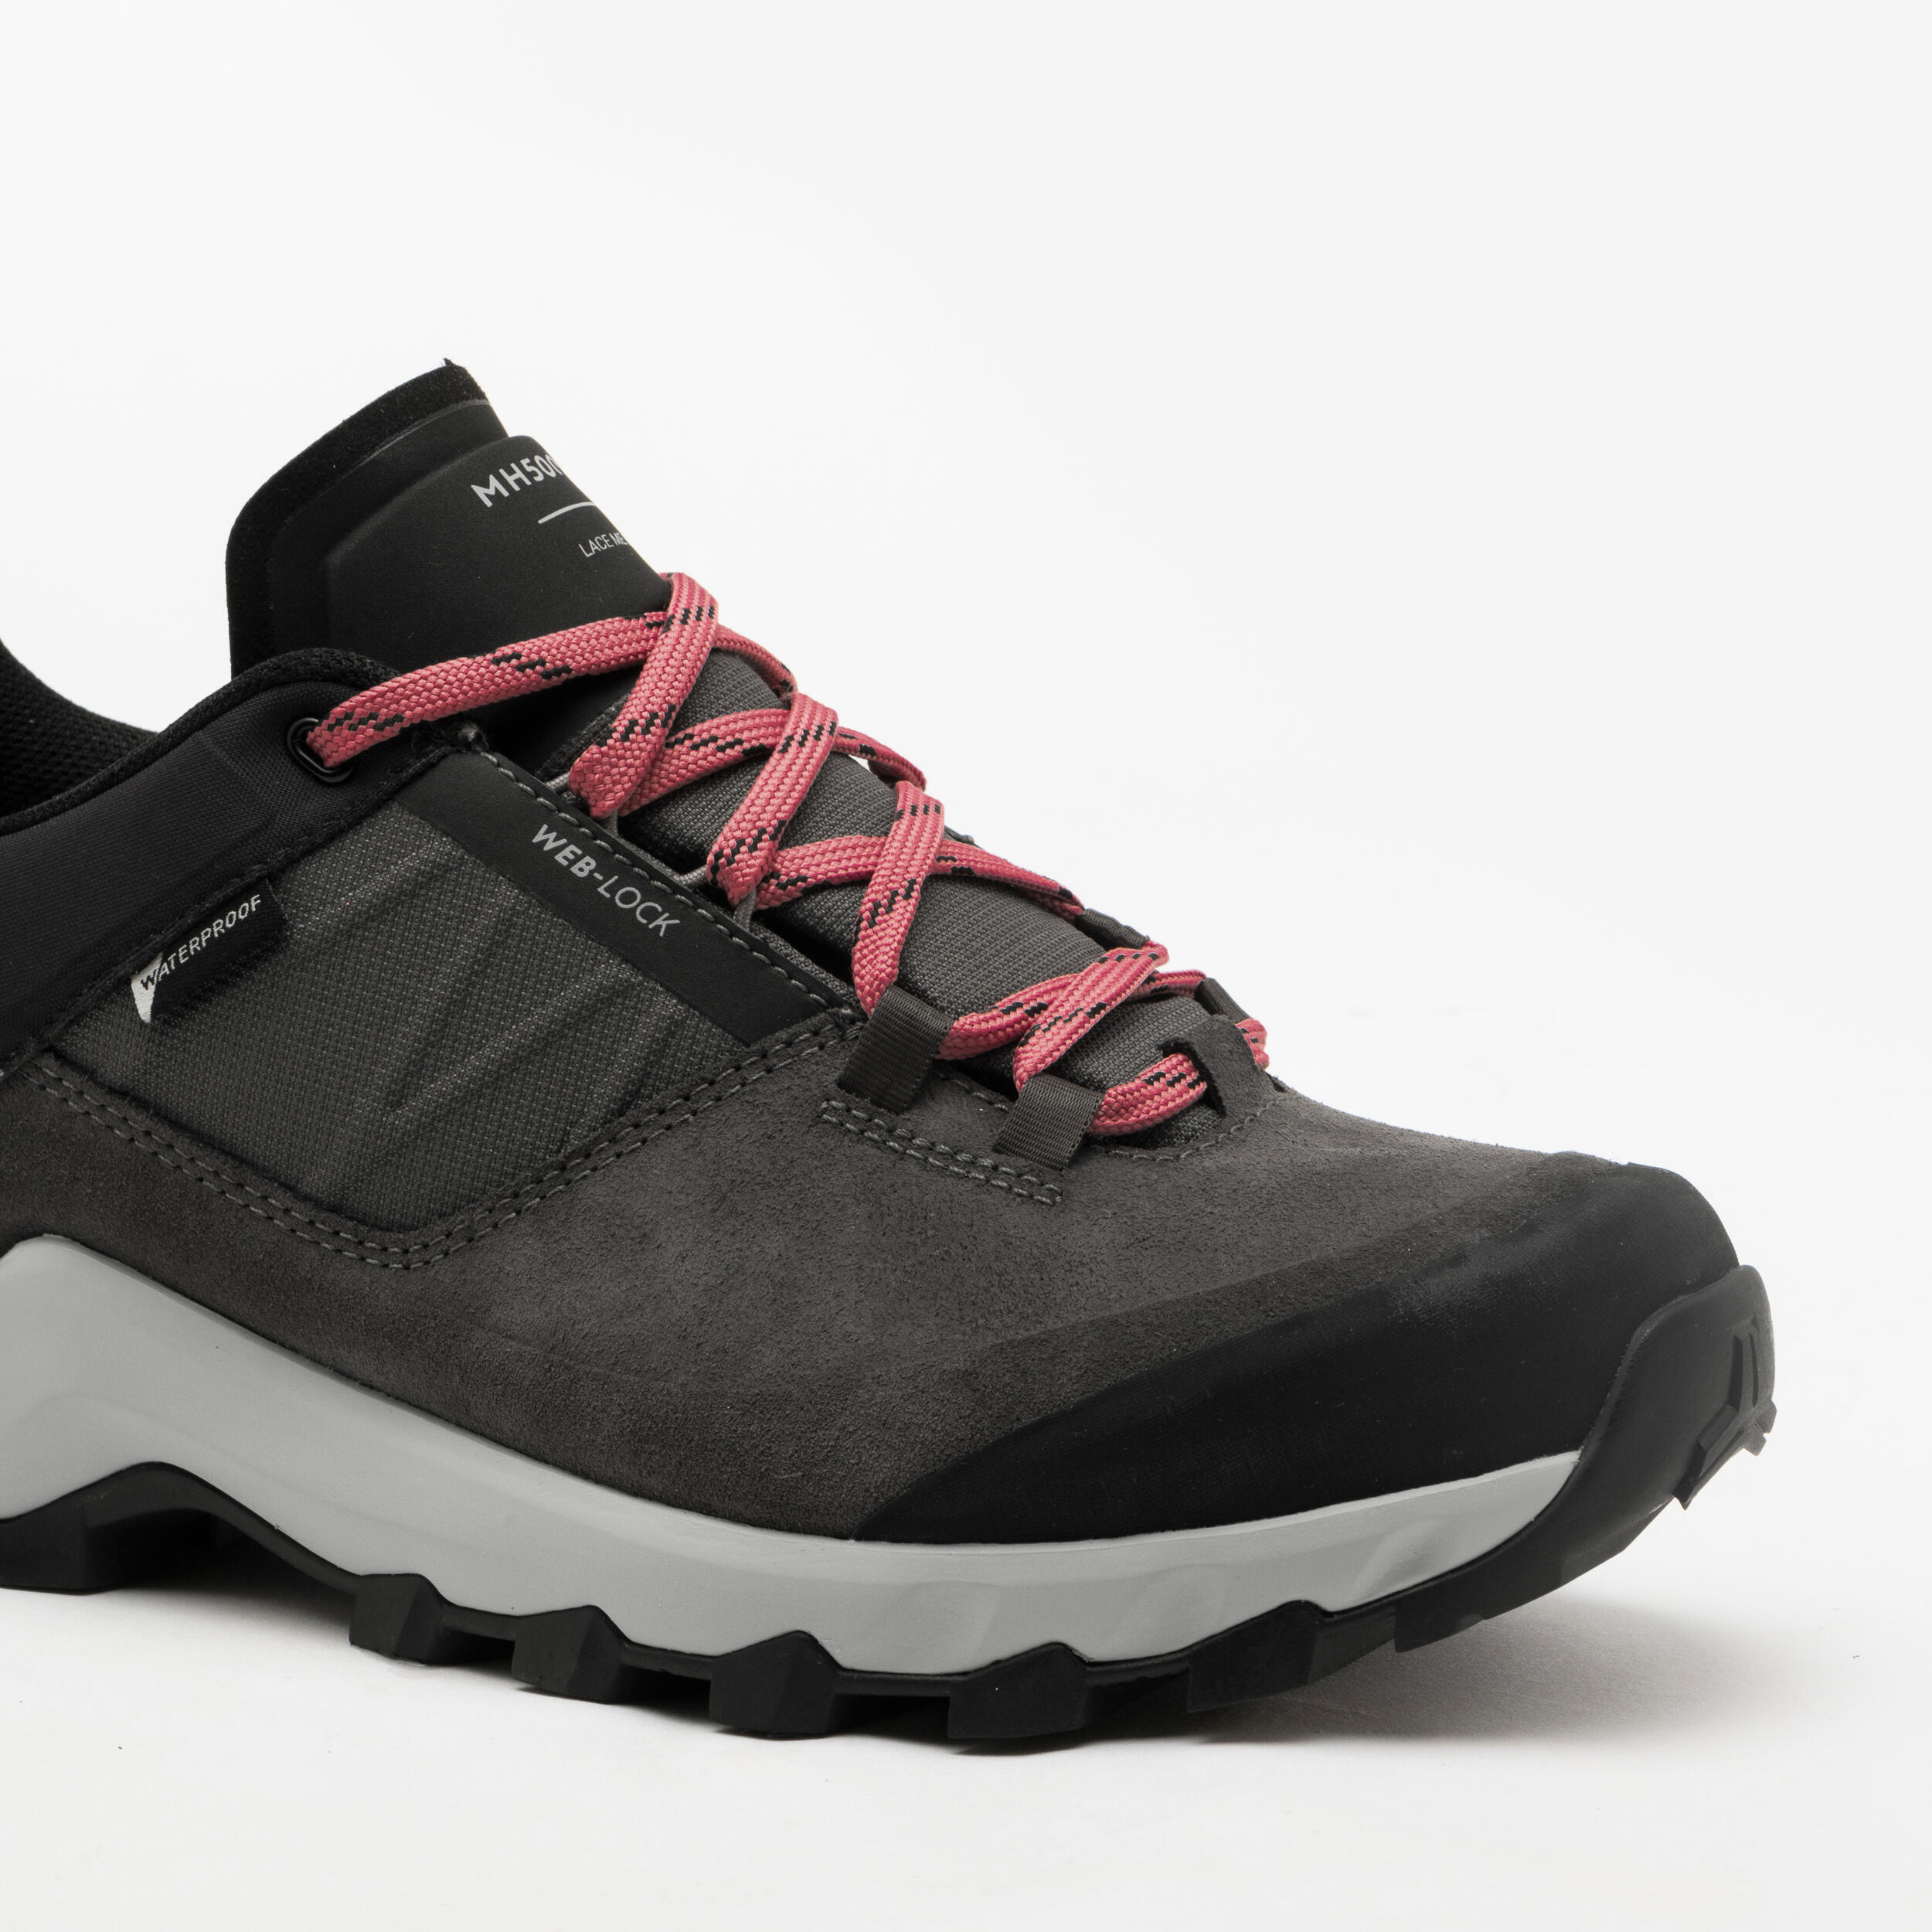 Women's waterproof mountain walking shoes - MH500 Grey 8/8